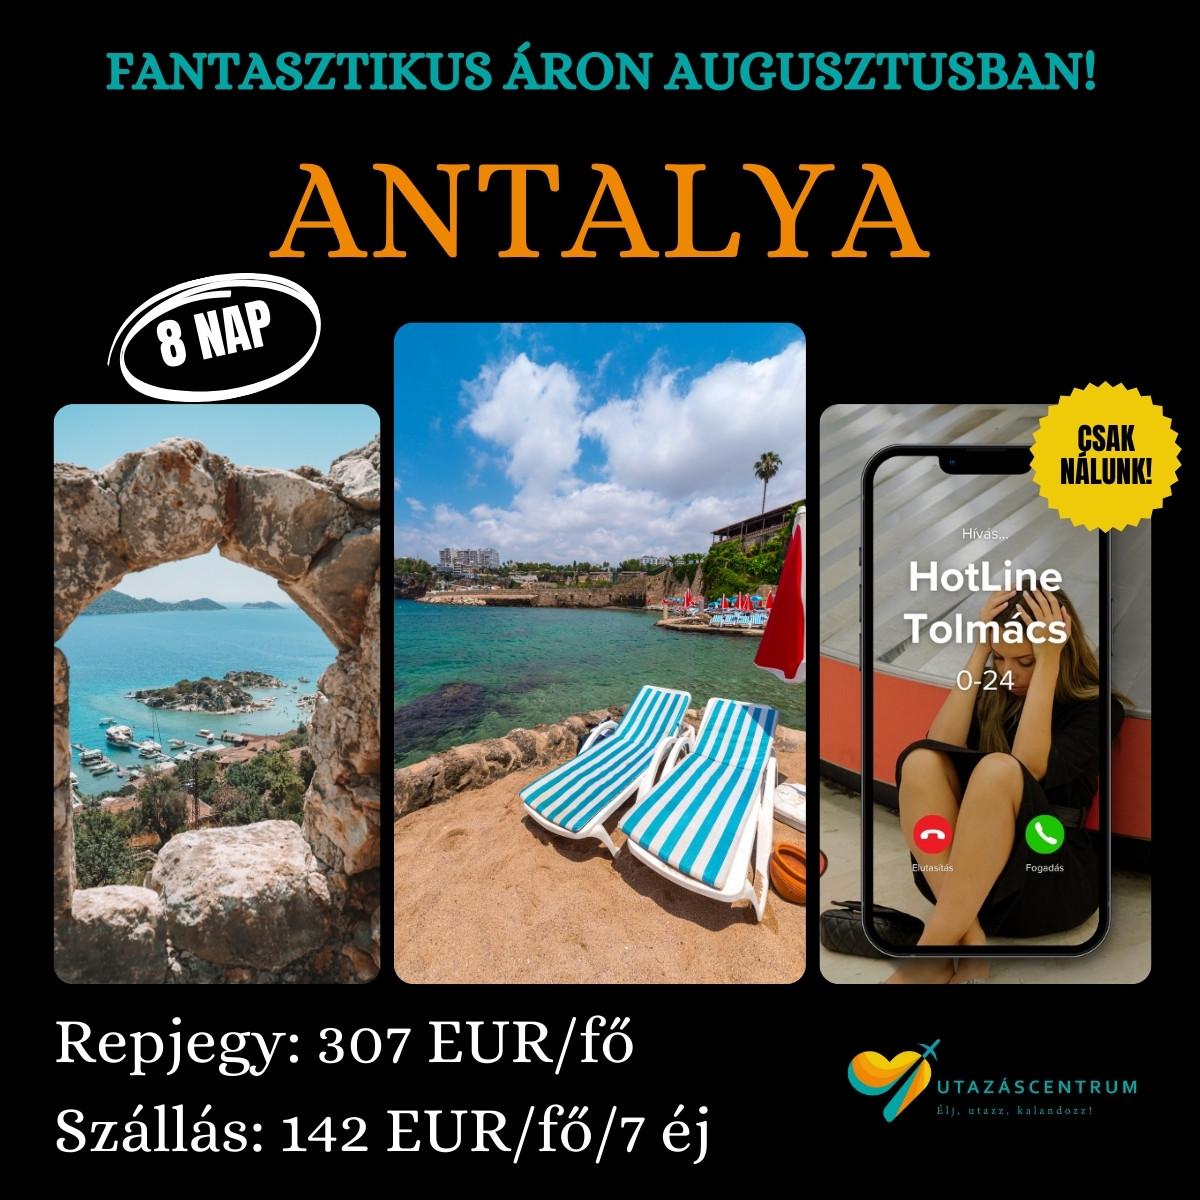 Antalya Törökország látnivalók utazás nyaralás utazási tipp programok utazáscentrum blog